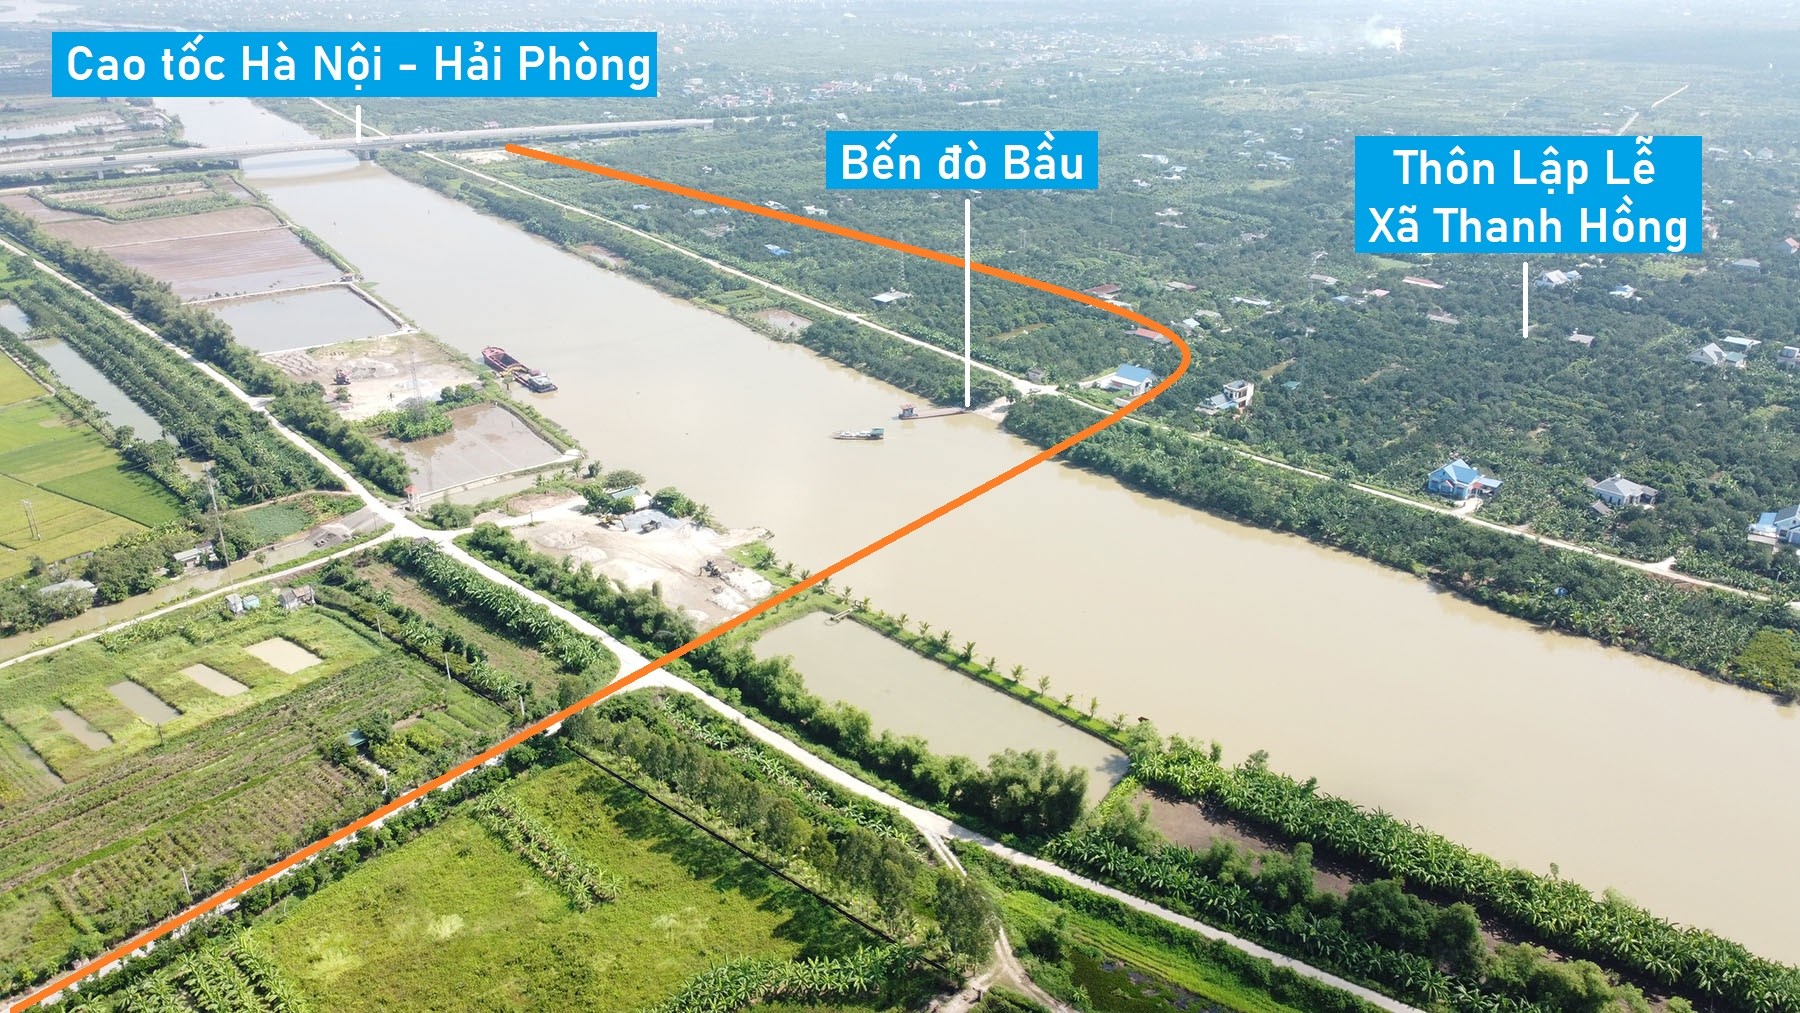 Toàn cảnh vị trí quy hoạch xây cầu vượt sông Thái Bình nối Thanh Hà - Tứ Kỳ, Hải Dương gần bến đò Bầu